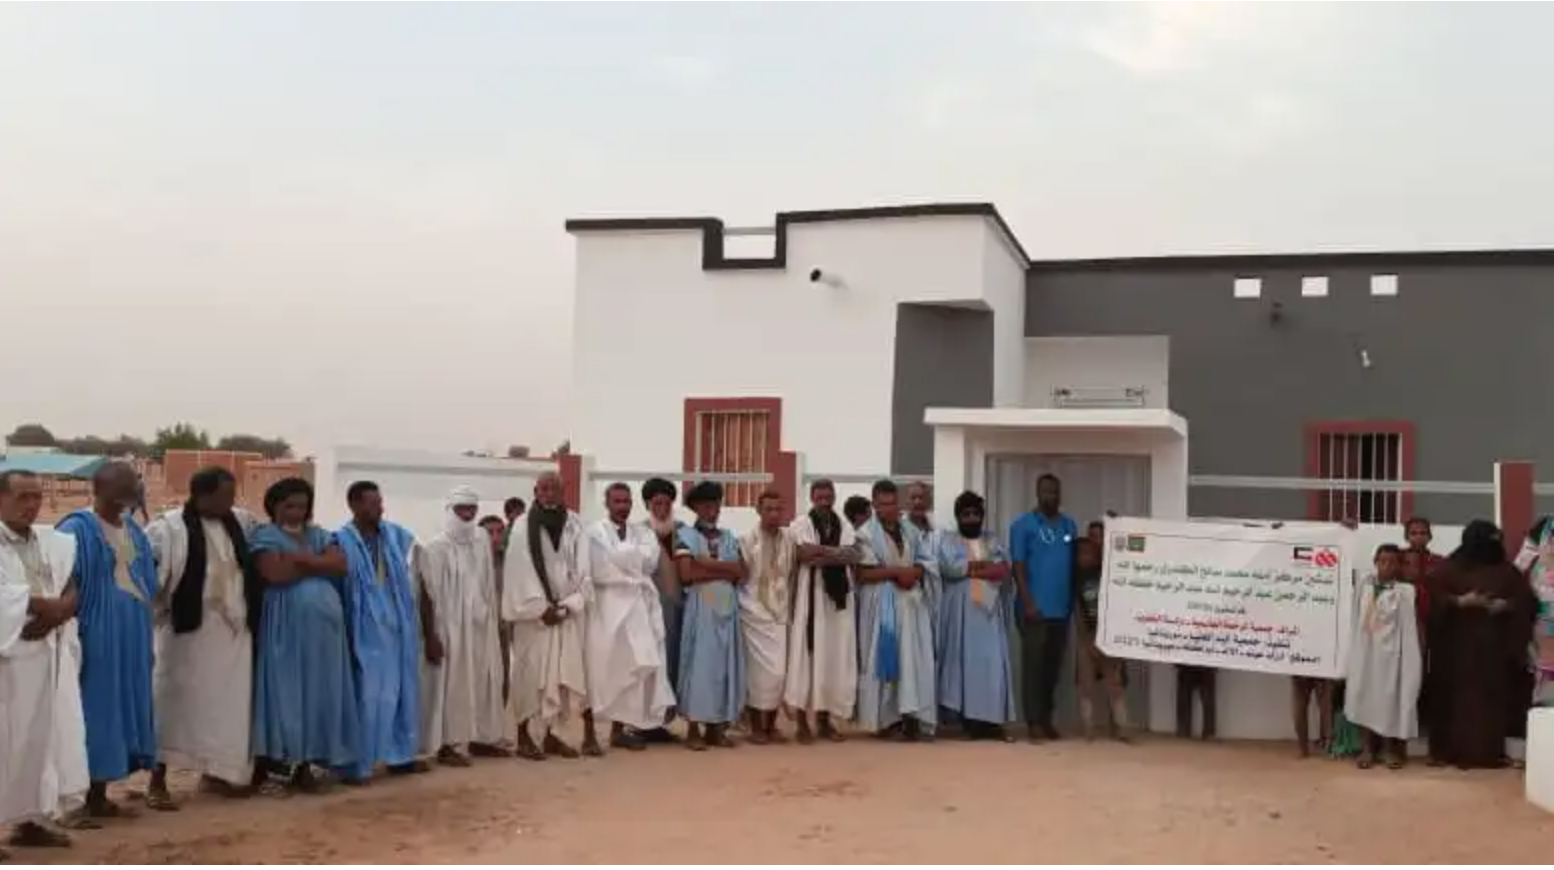 Sur financement koweïtien, inauguration de points de santé dans quatre wilayas de la Mauritanie